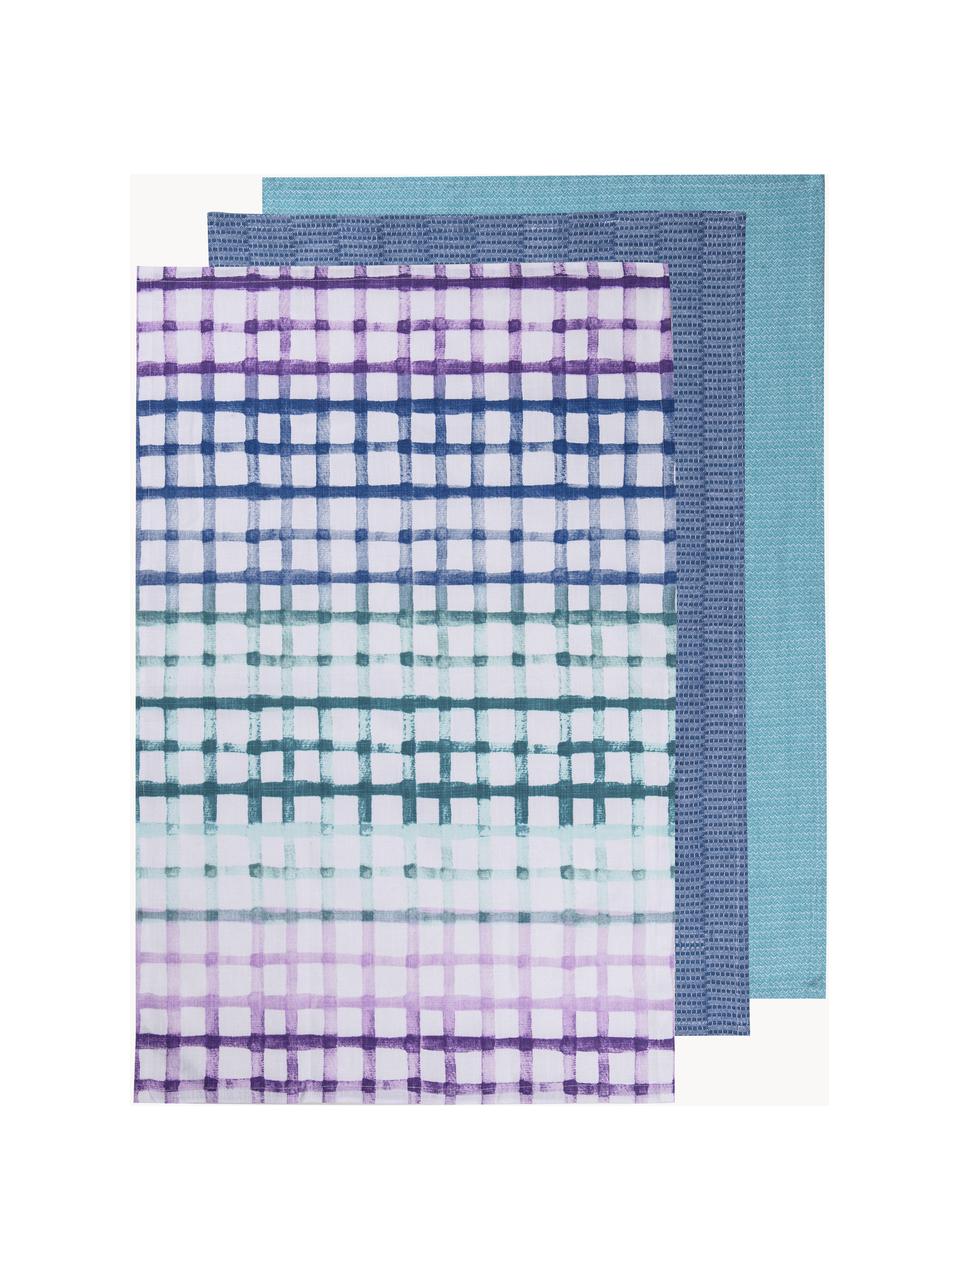 Torchons Trinny, 3 élém., 100 % coton, Blanc, lilas, bleu, larg. 45 x long. 70 cm